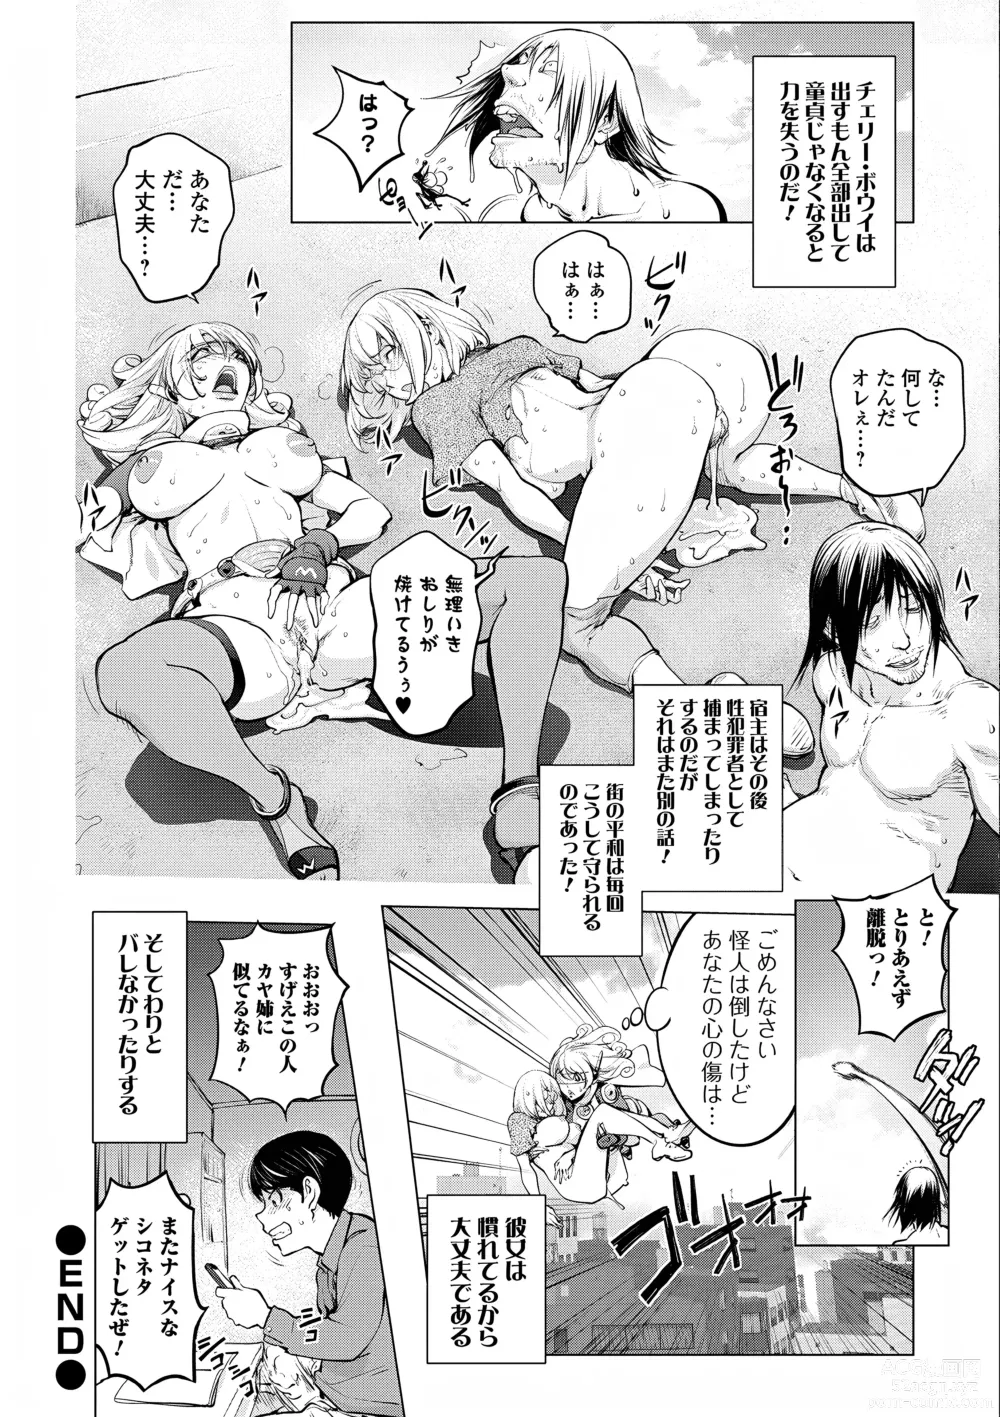 Page 20 of manga Kaya-Nee VS Cherry Boy